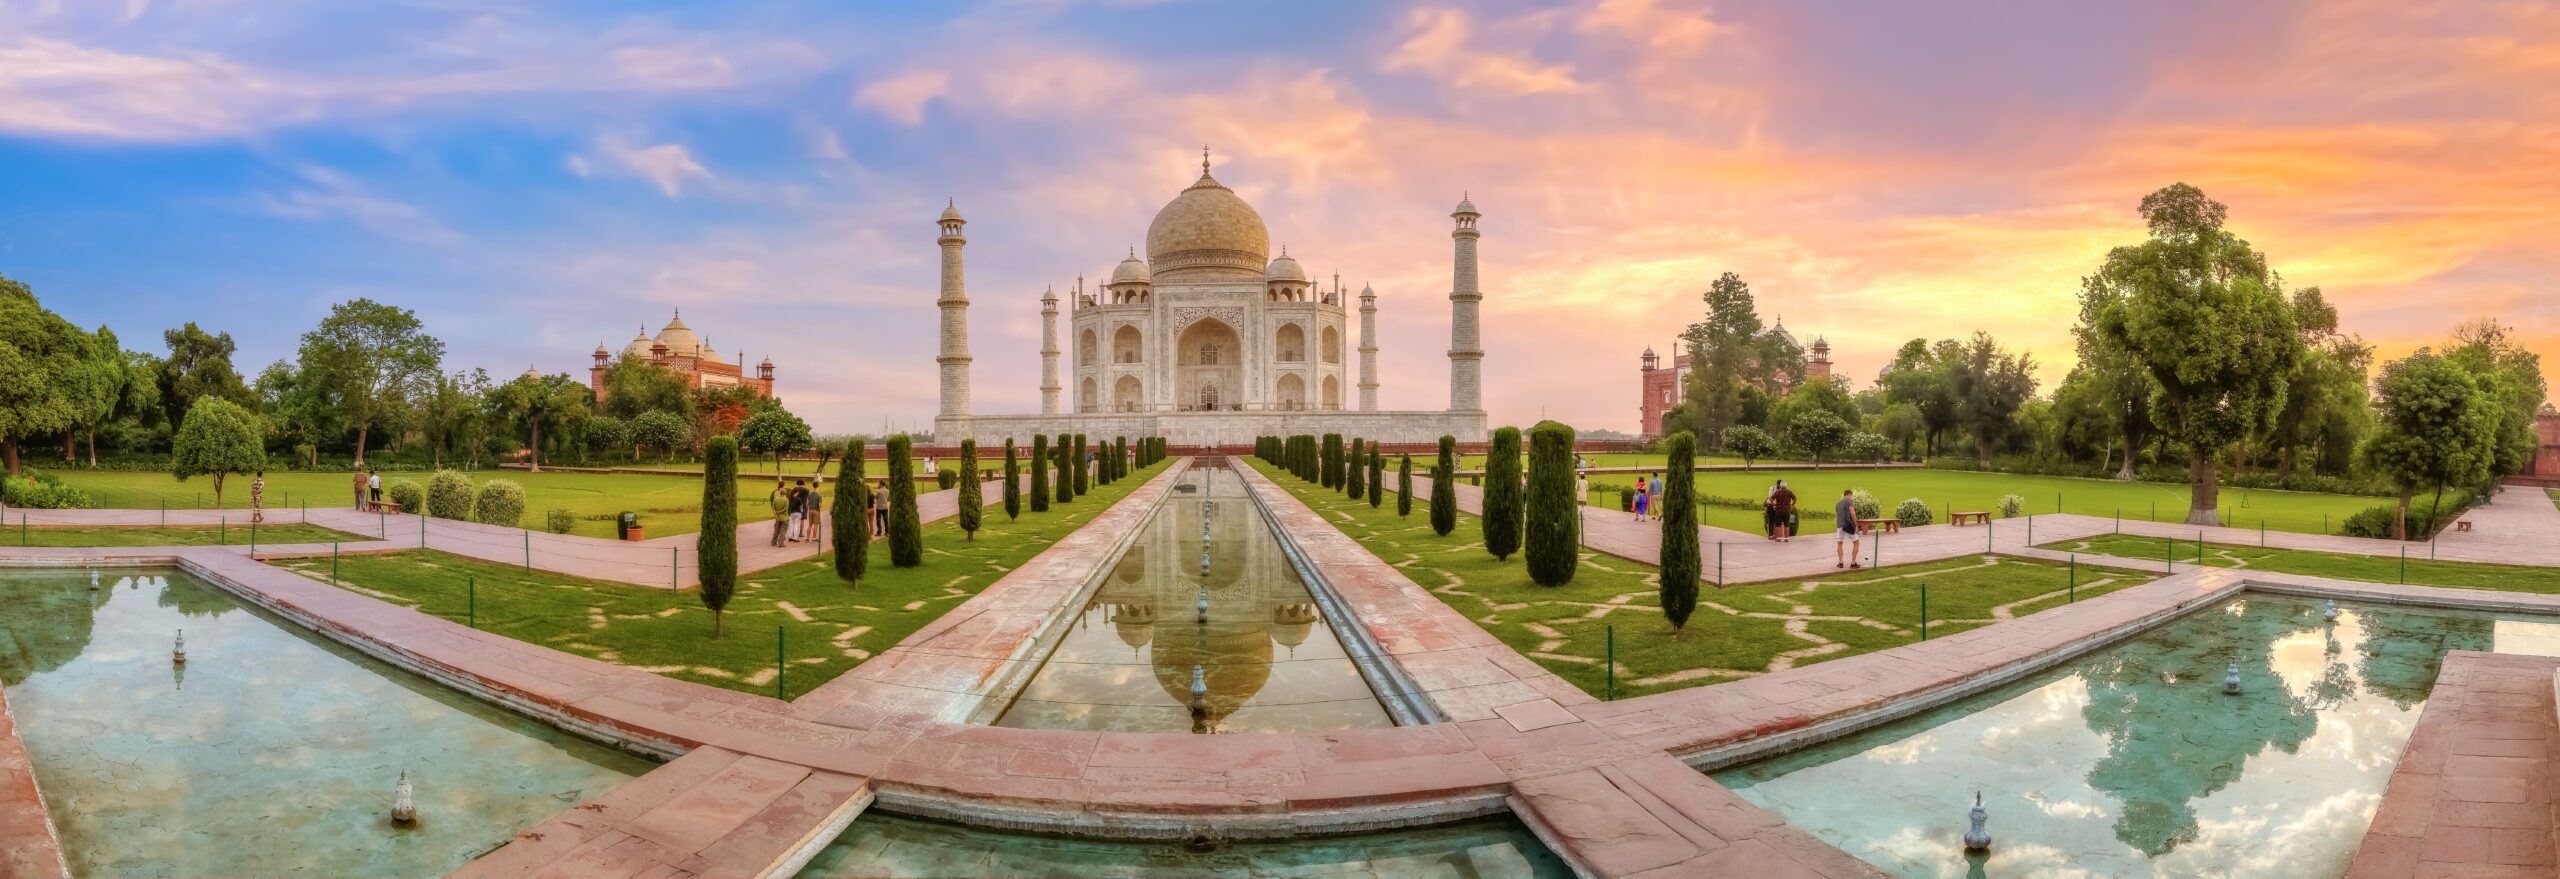 Blog artikel 'Top 10 Bestemmingen in India'